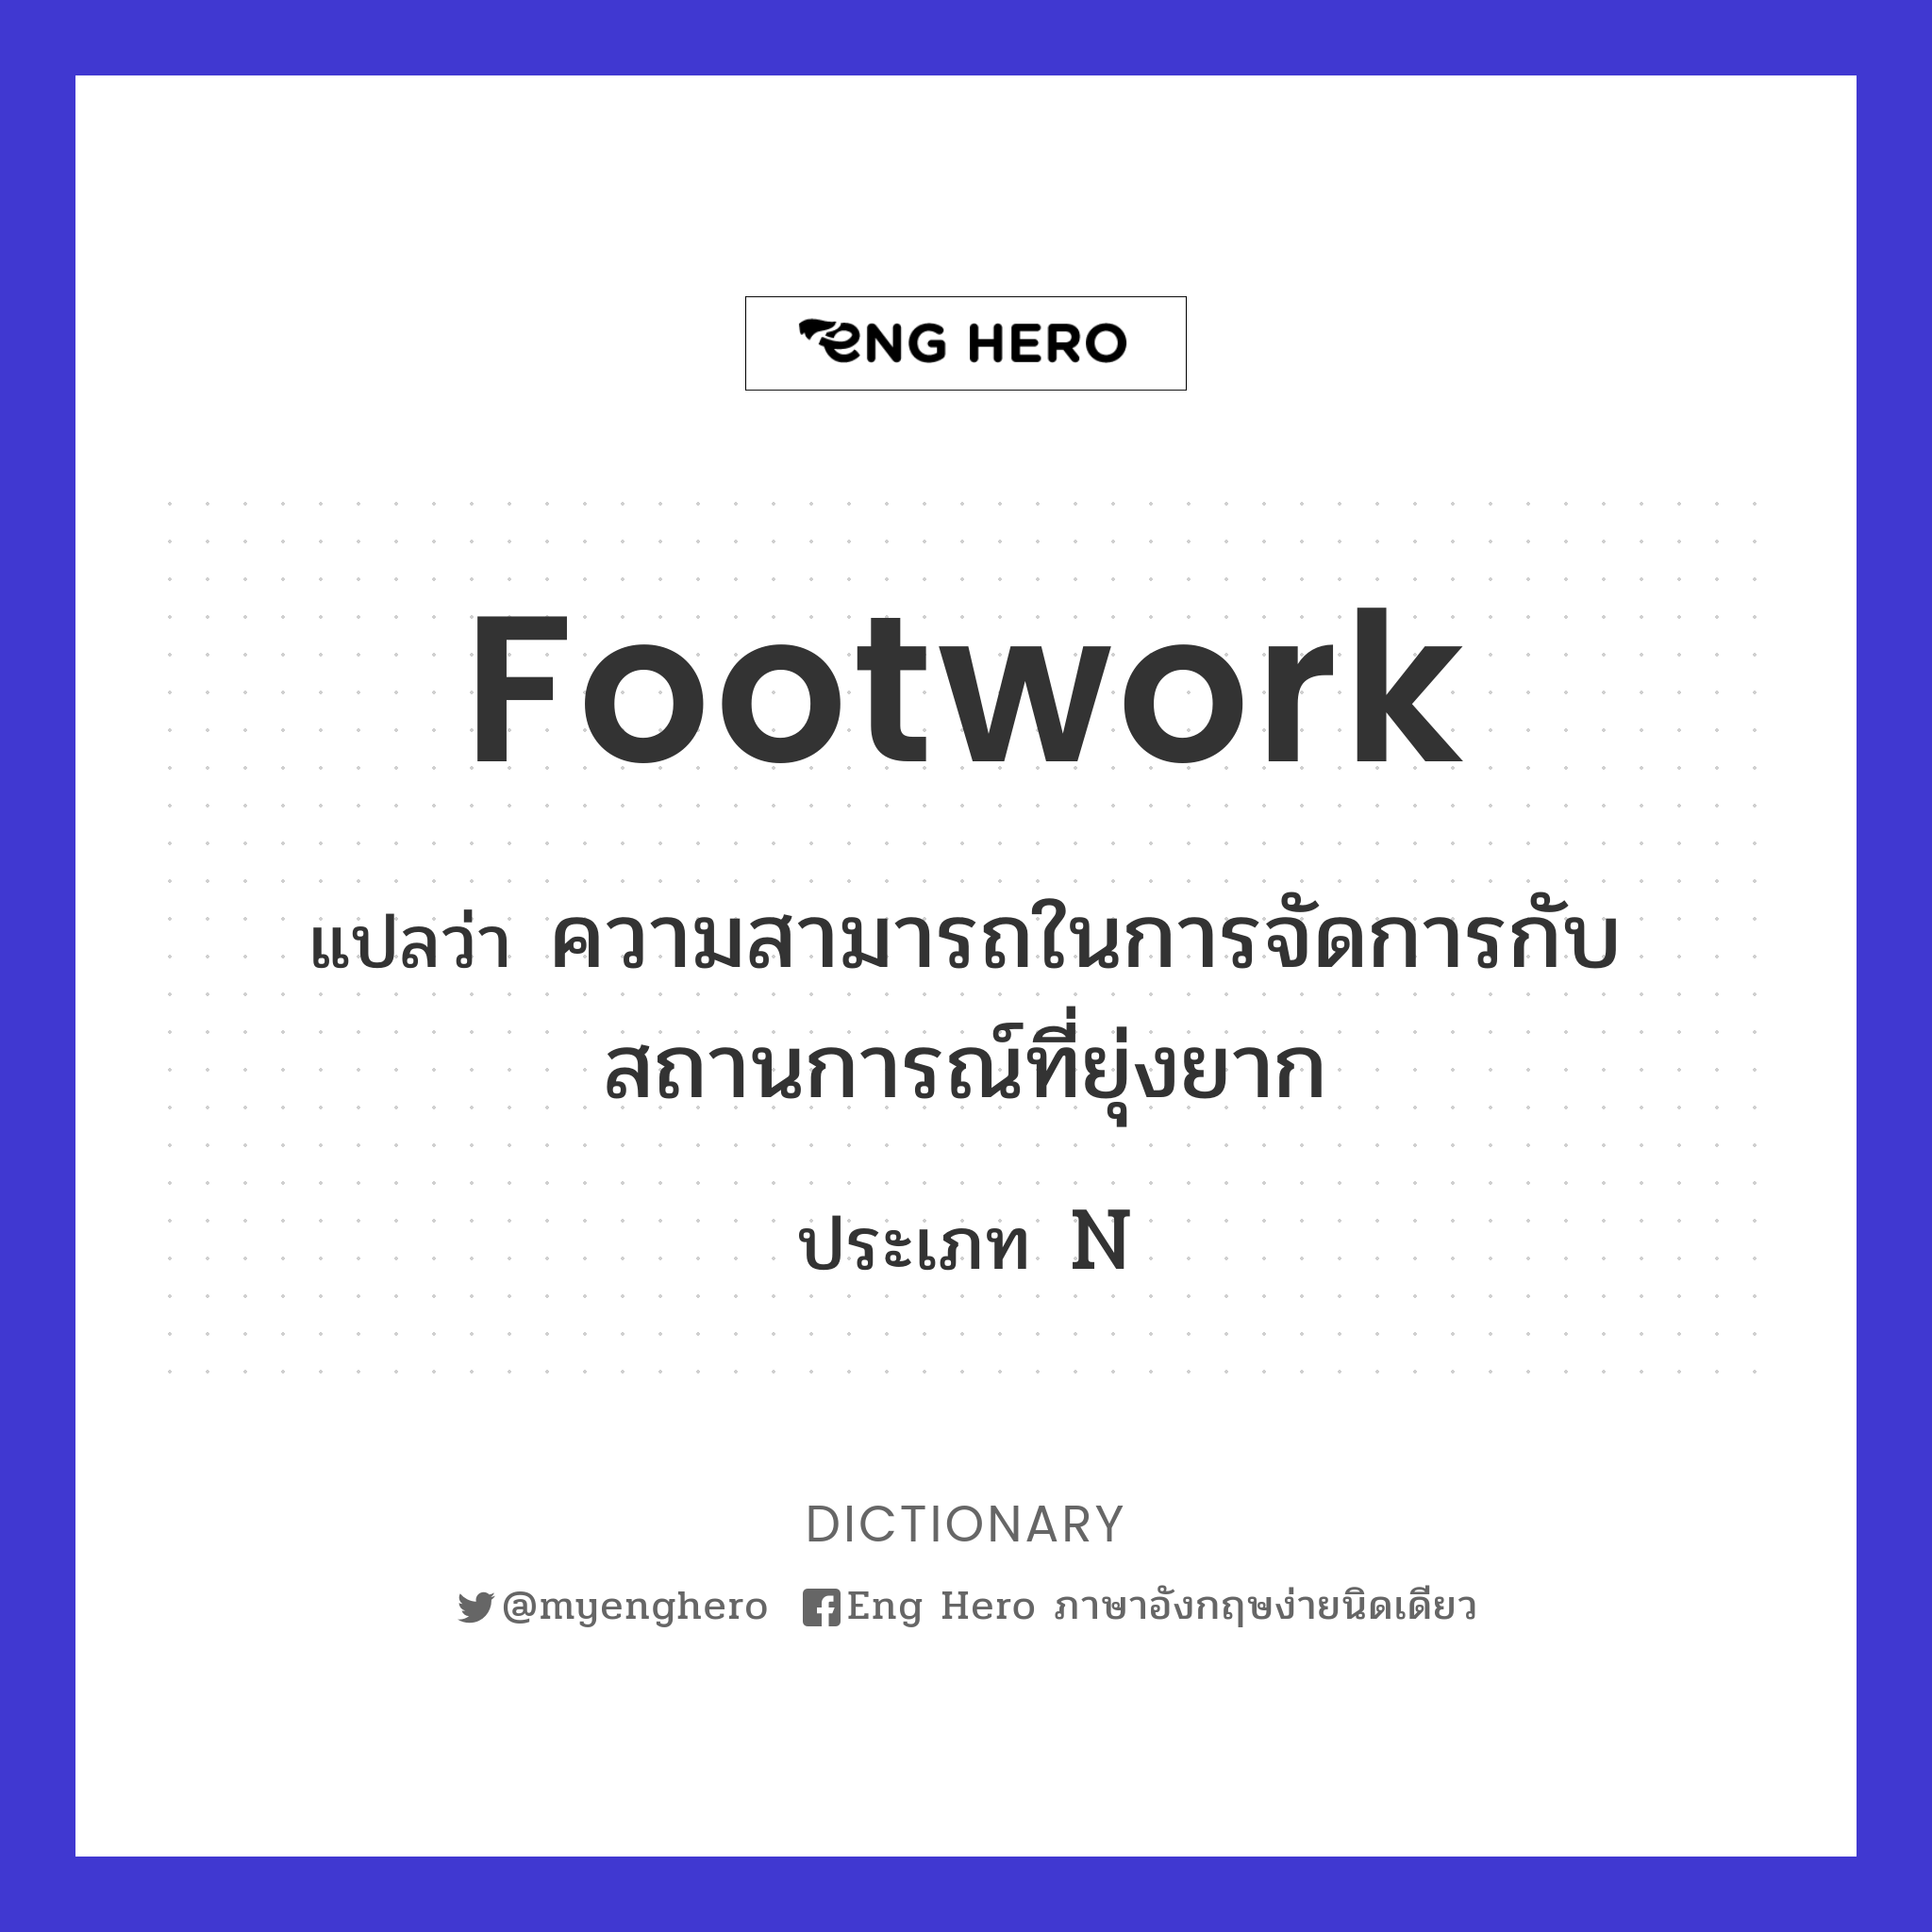 footwork